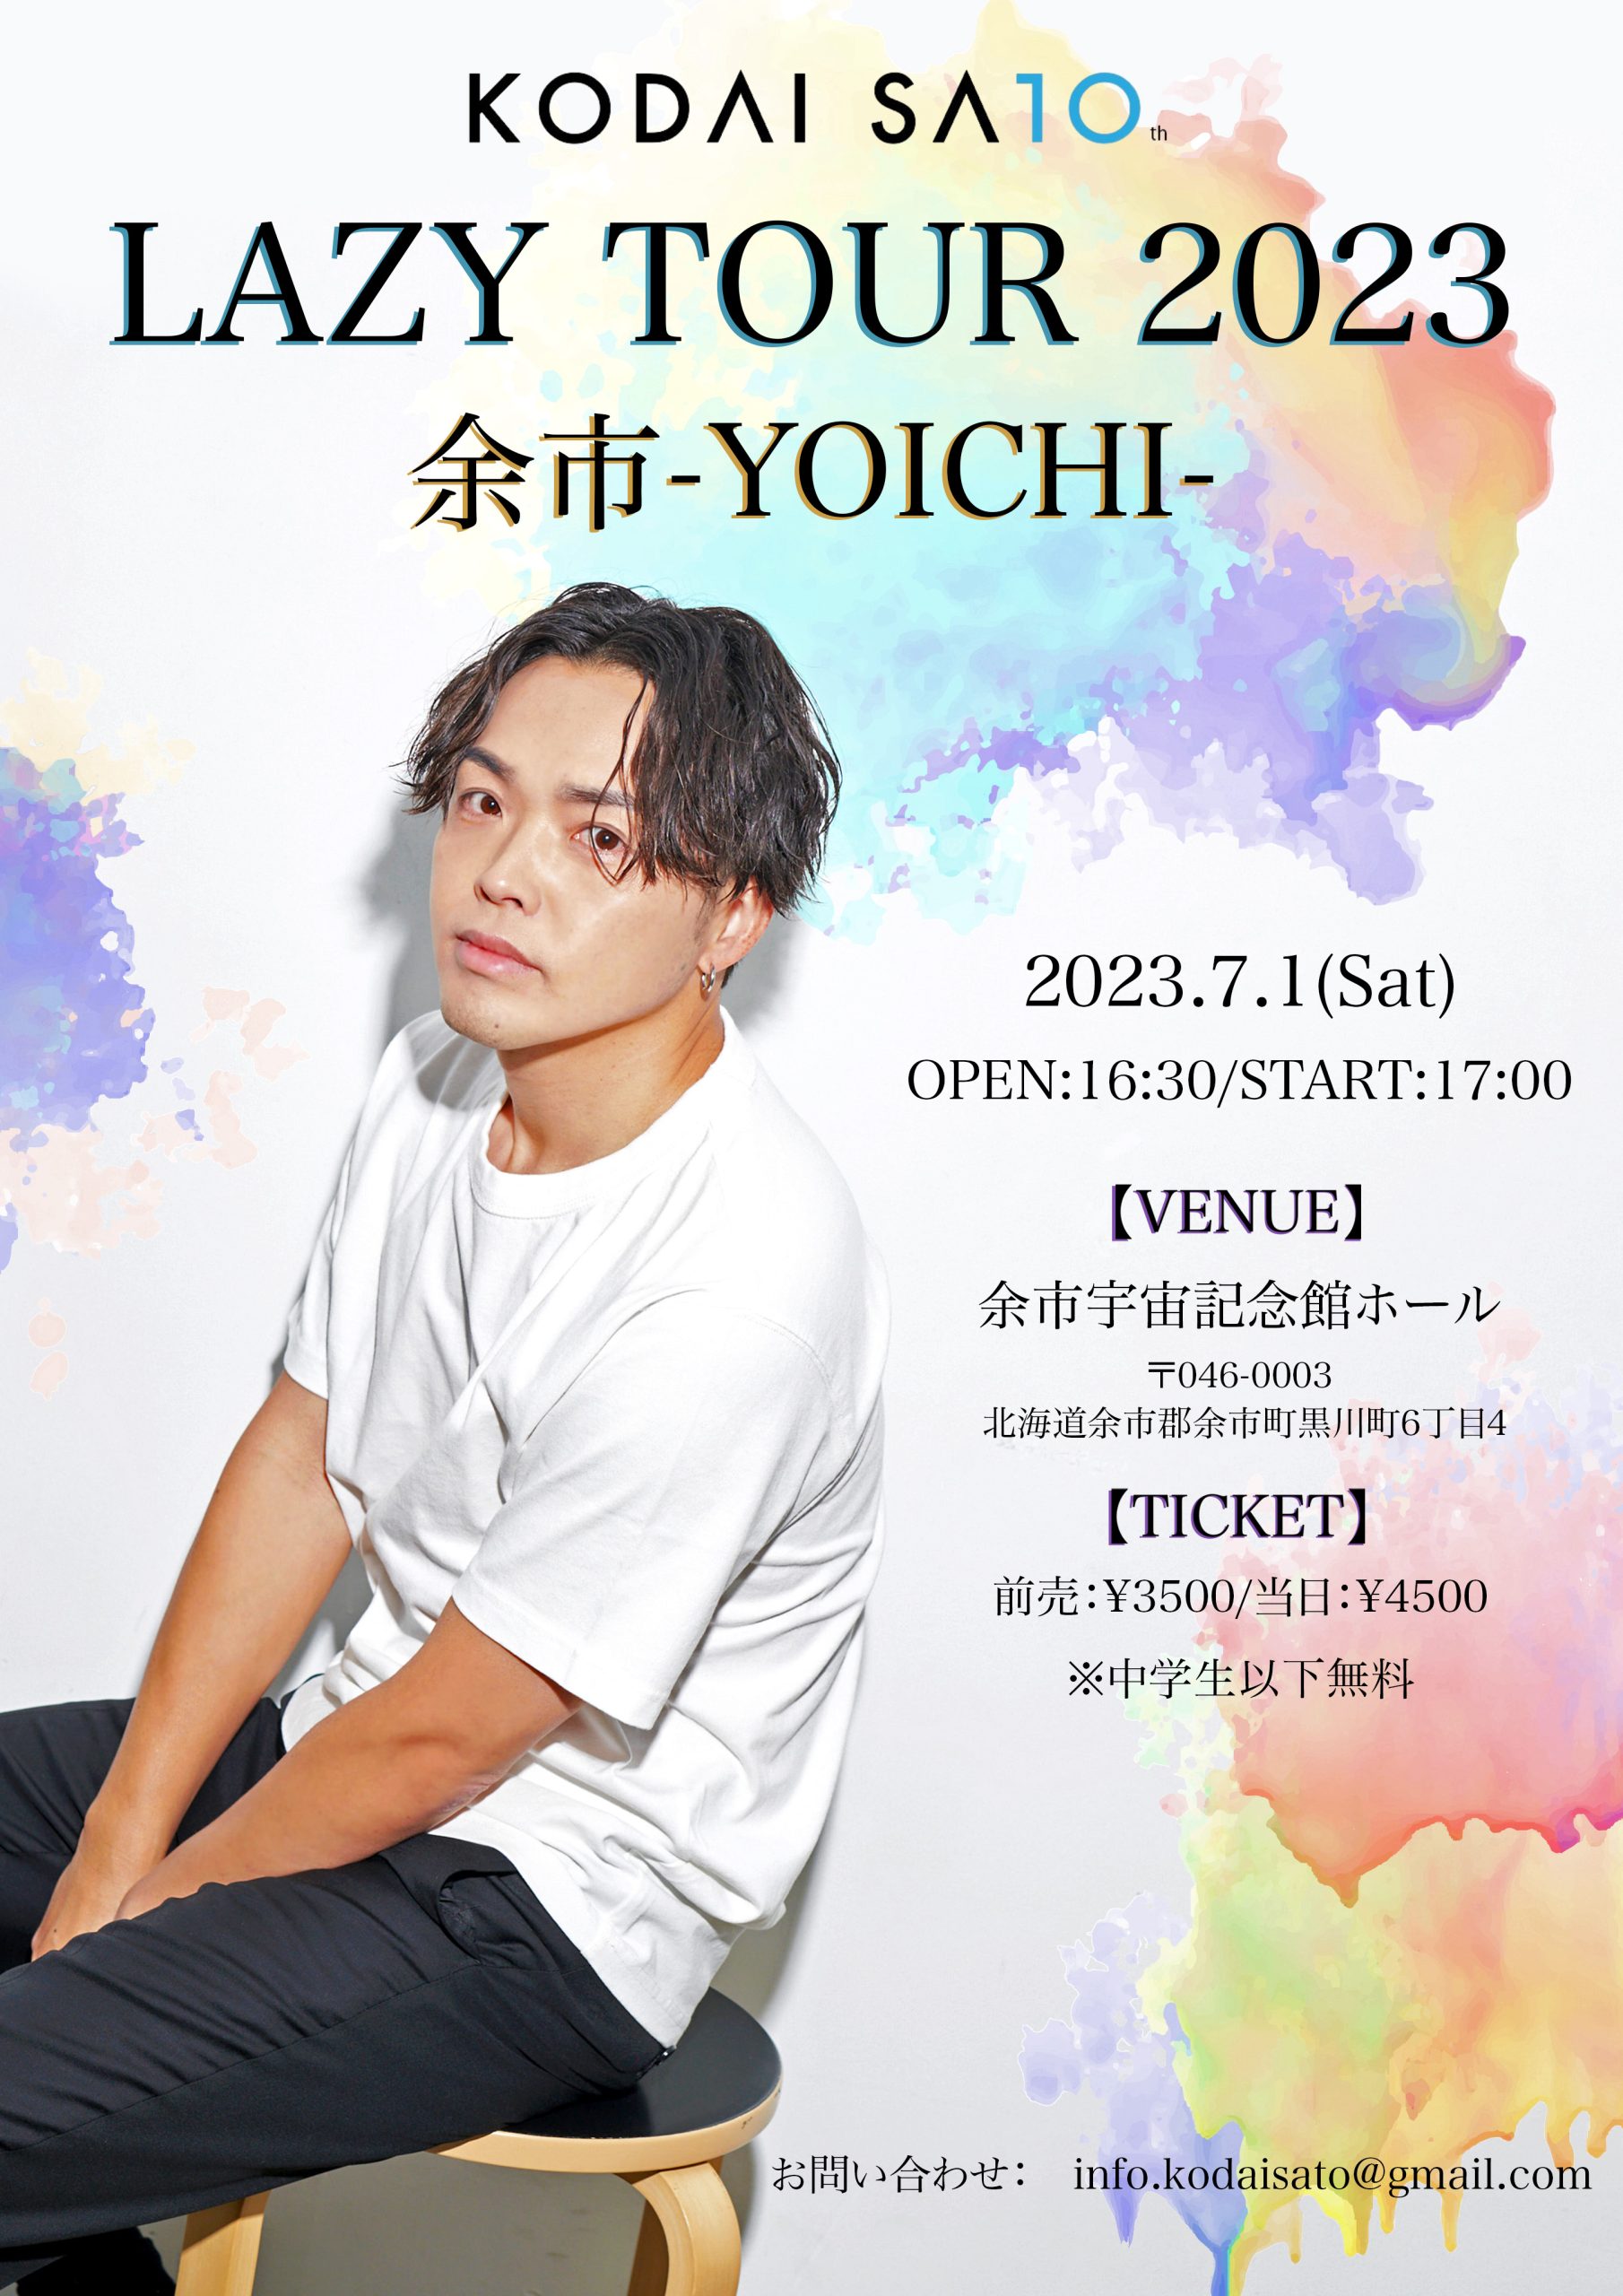 「LAZY TOUR 2023」余市 -YOICHI-